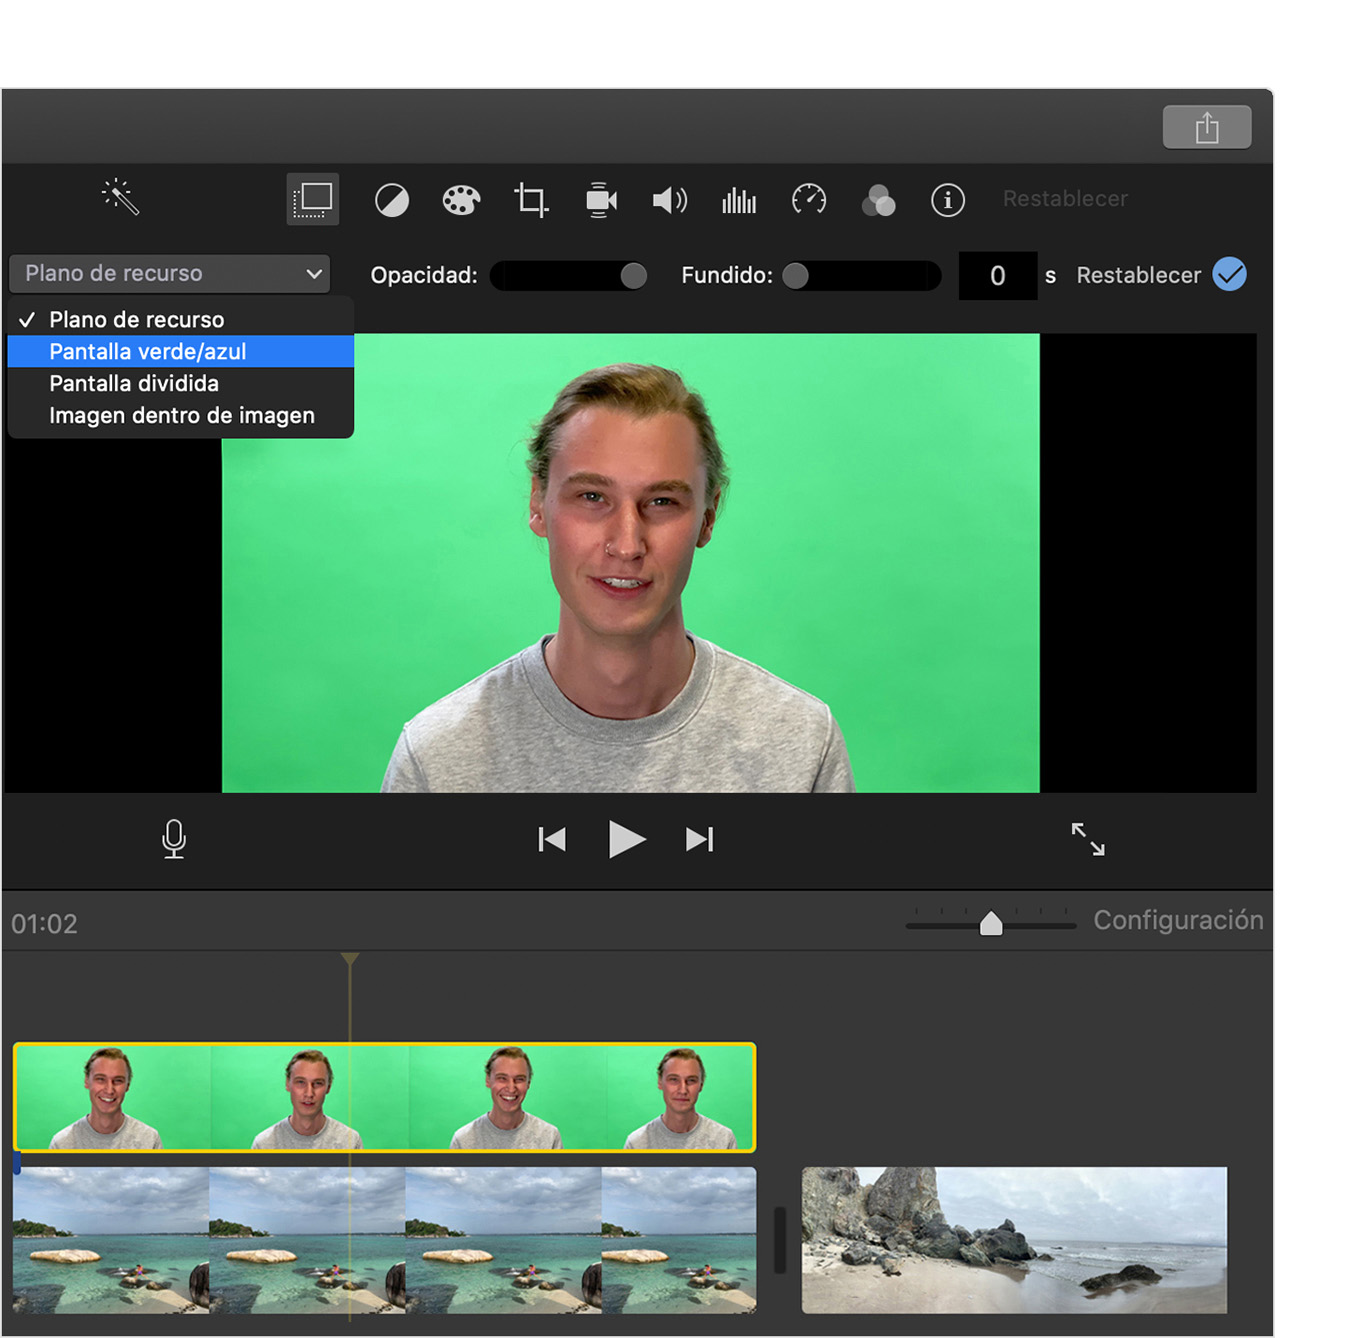 Cambiar el fondo de un video en iMovie - Soporte técnico de Apple